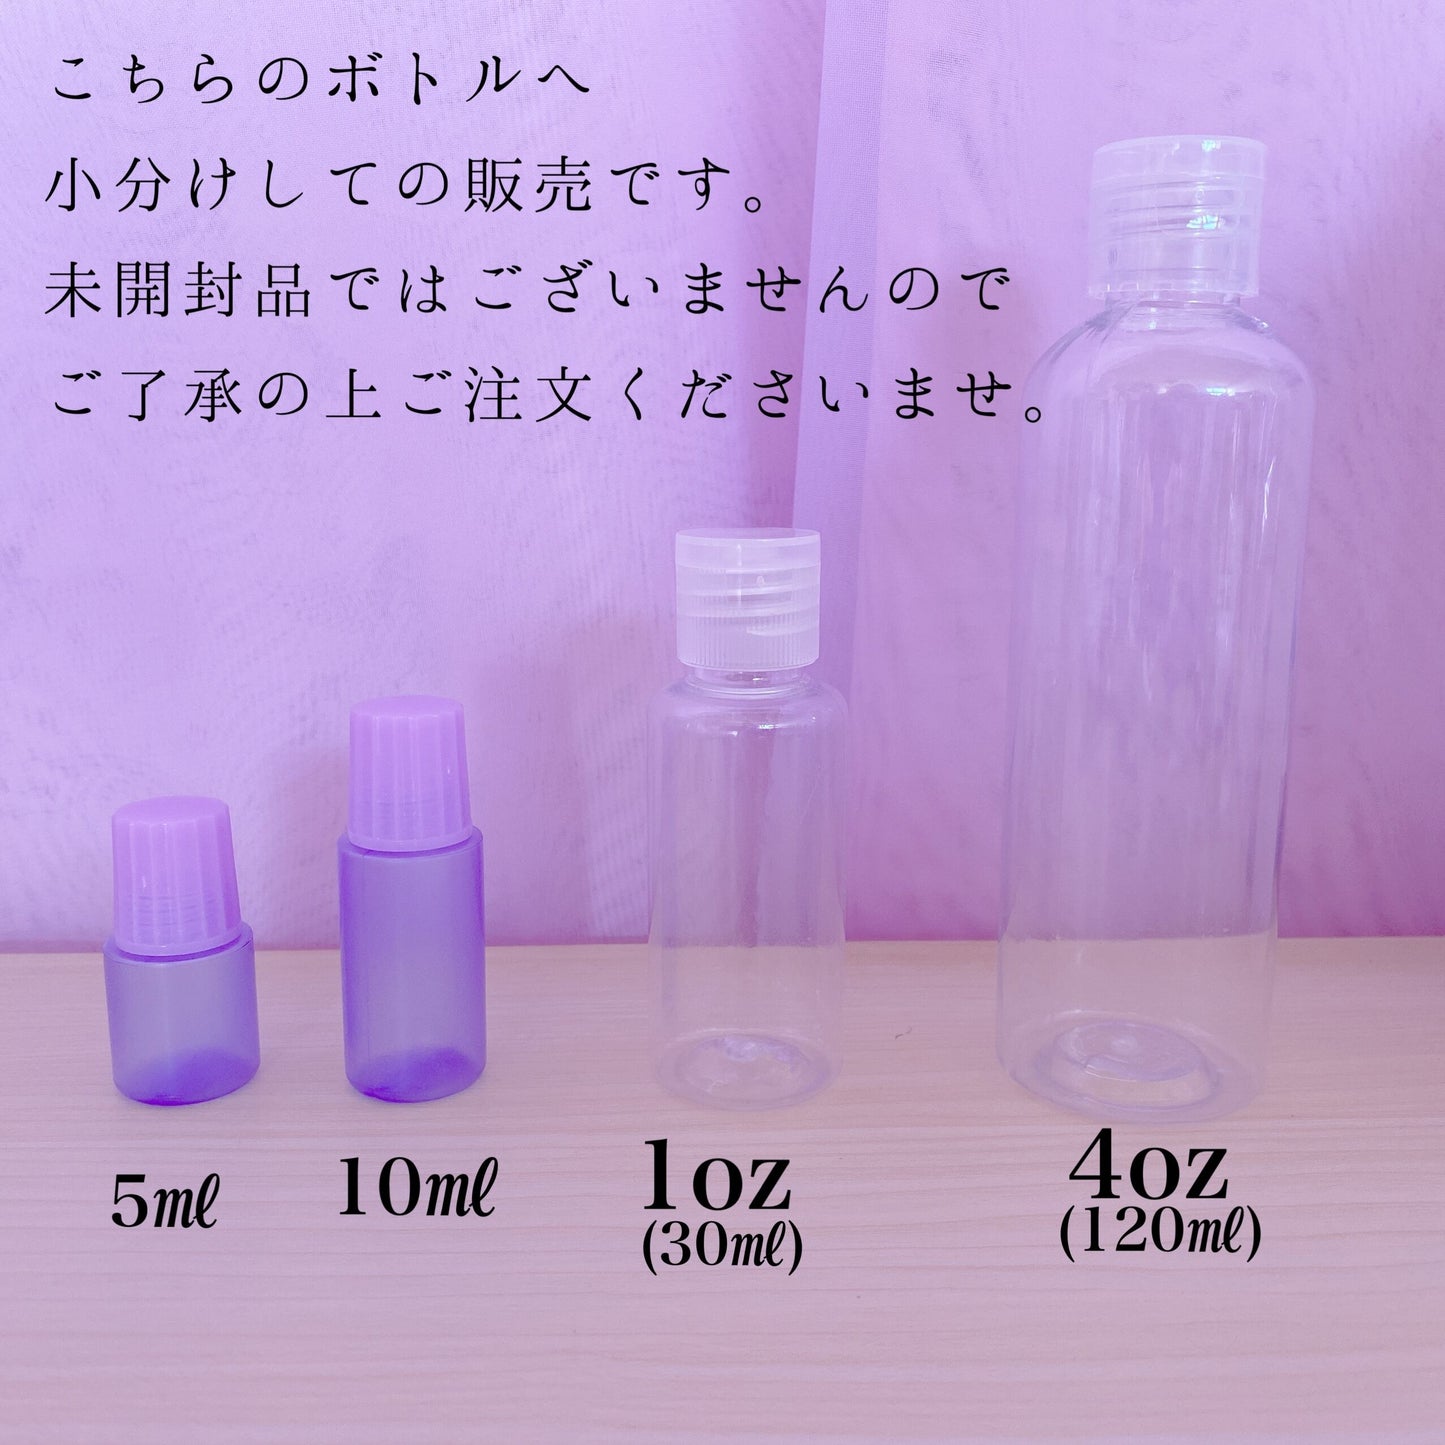 【Snacks fragrance】スナック フレグランスオイル スライム香料